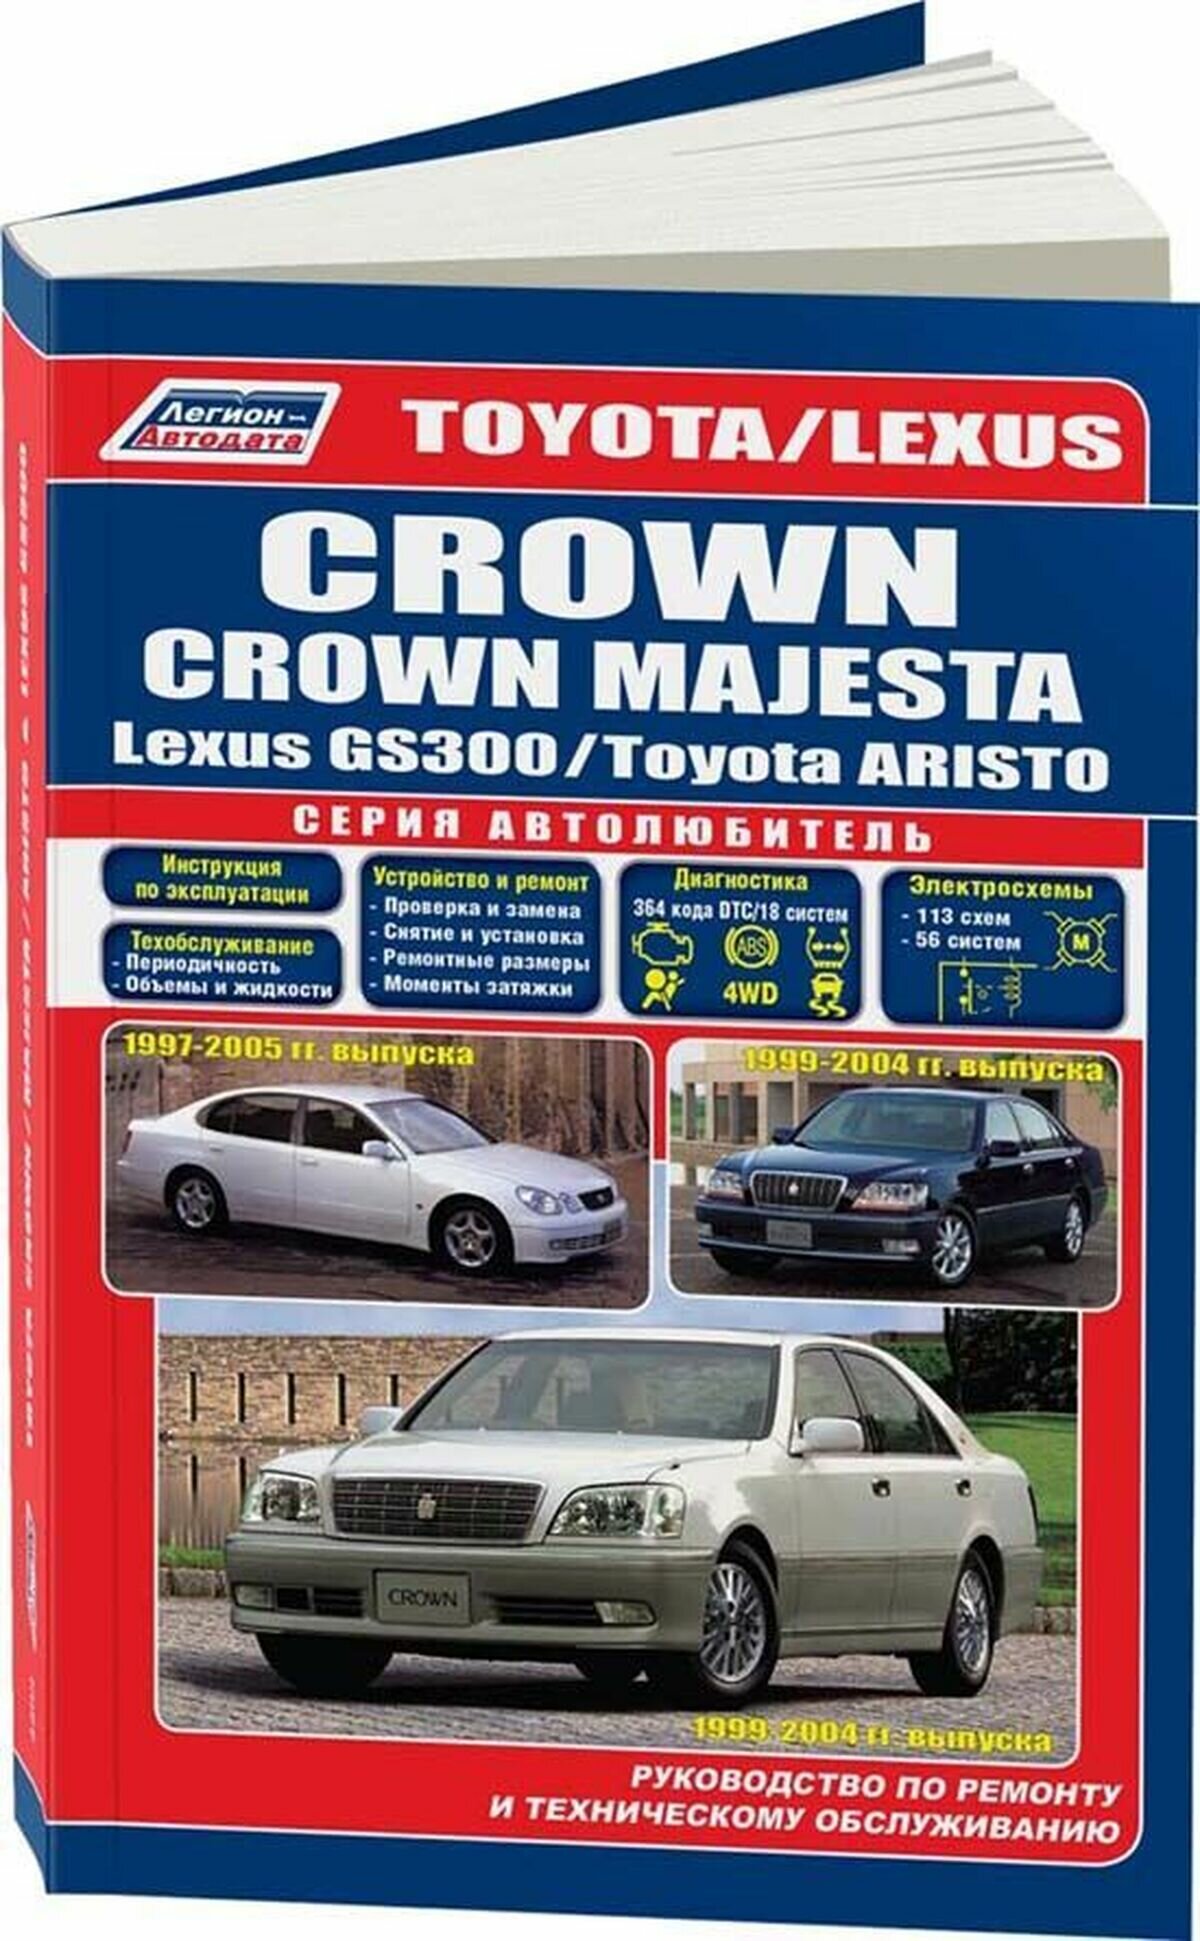 "Toyota Crown / Crown Magesta. Модели 1999-2004 гг. выпуска + Toyota Aristo / Lexus GS 300. Модели 1997-2005 гг. выпуска. Устройство, техническое обслуживание и ремонт"